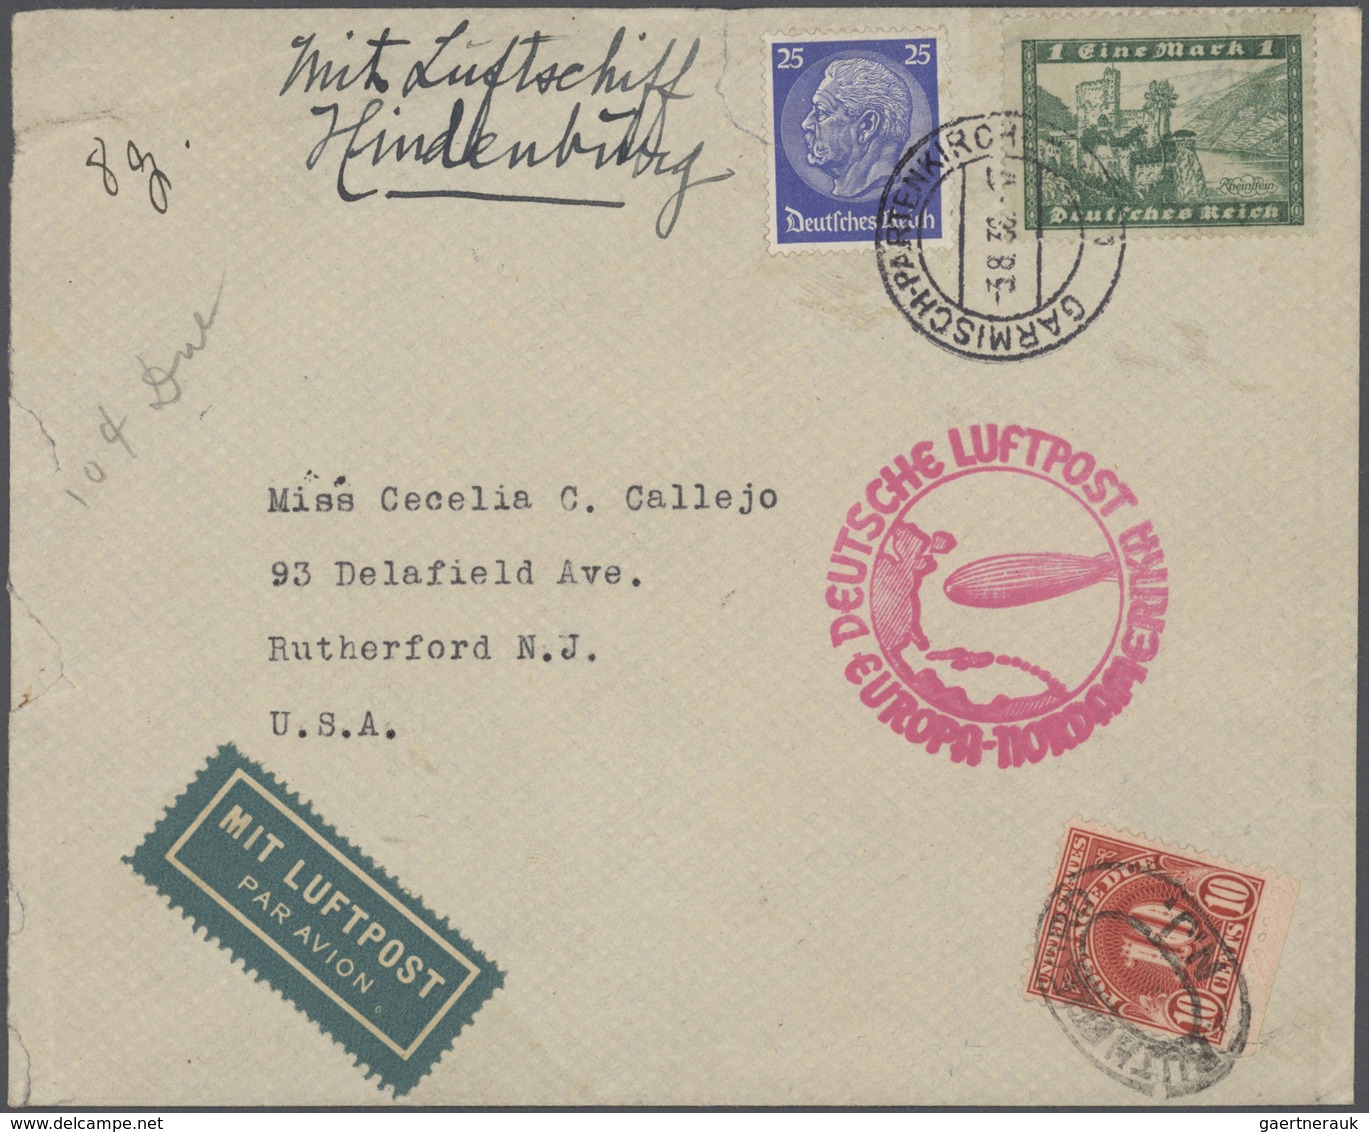 Deutsches Reich: 1875-1944, großer Karton mit vielen hundert Briefen, Belegen und Ganzsachen, dabei